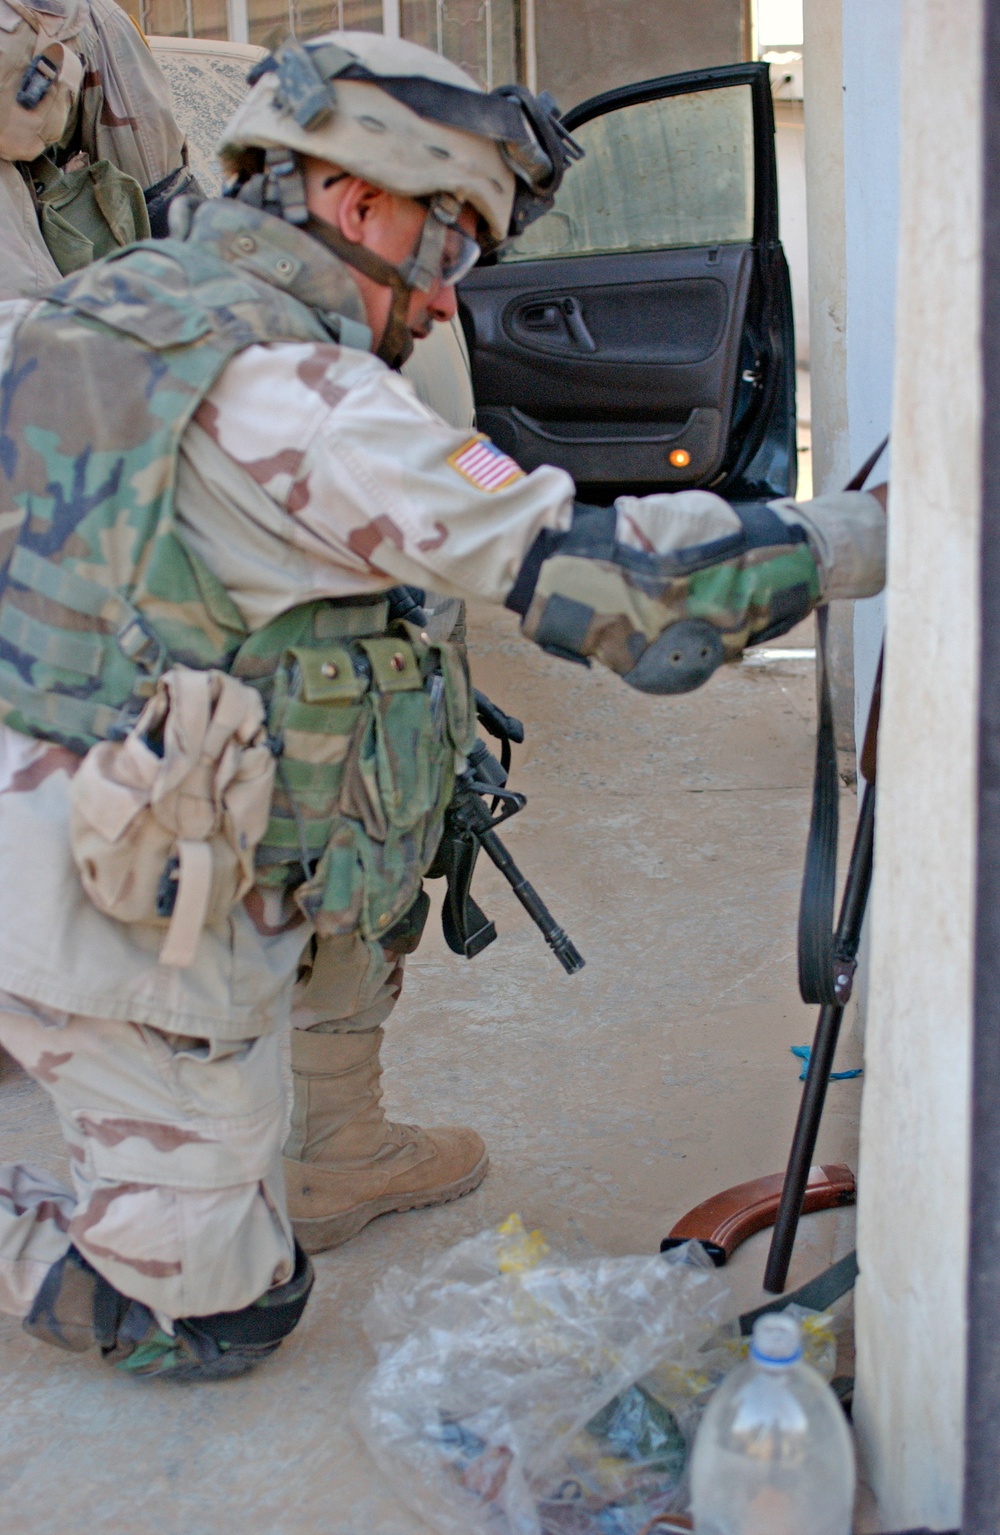 A Soldier examines an AK 47 found during a raid